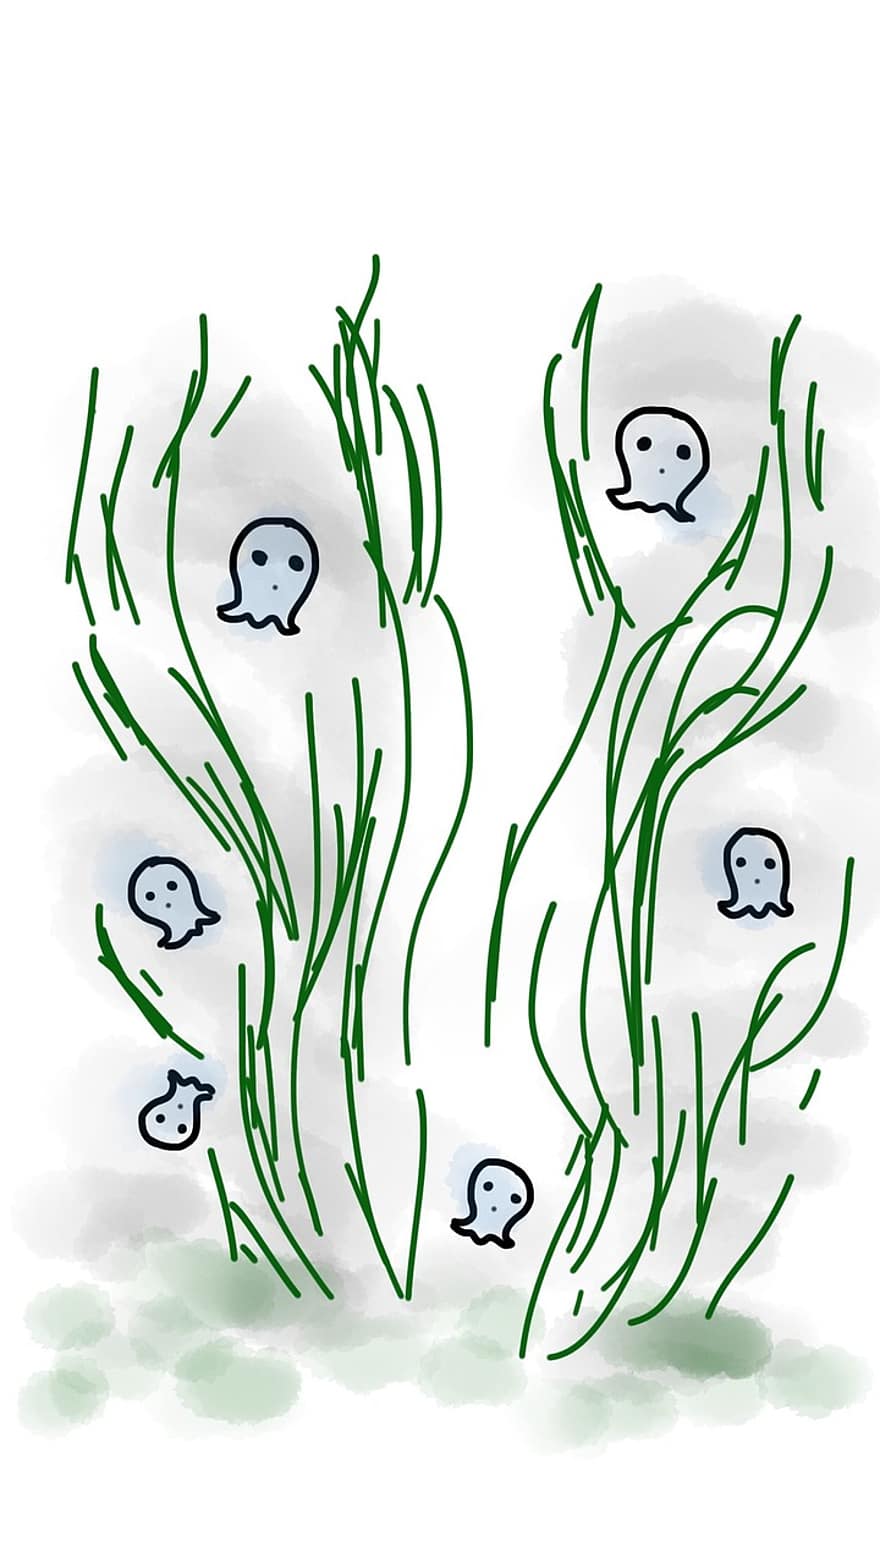 призрак, трава, Хэллоуин, тайна, плавающий, темнота, страх, зеленый, Маленький призрак, страшно, жуткий